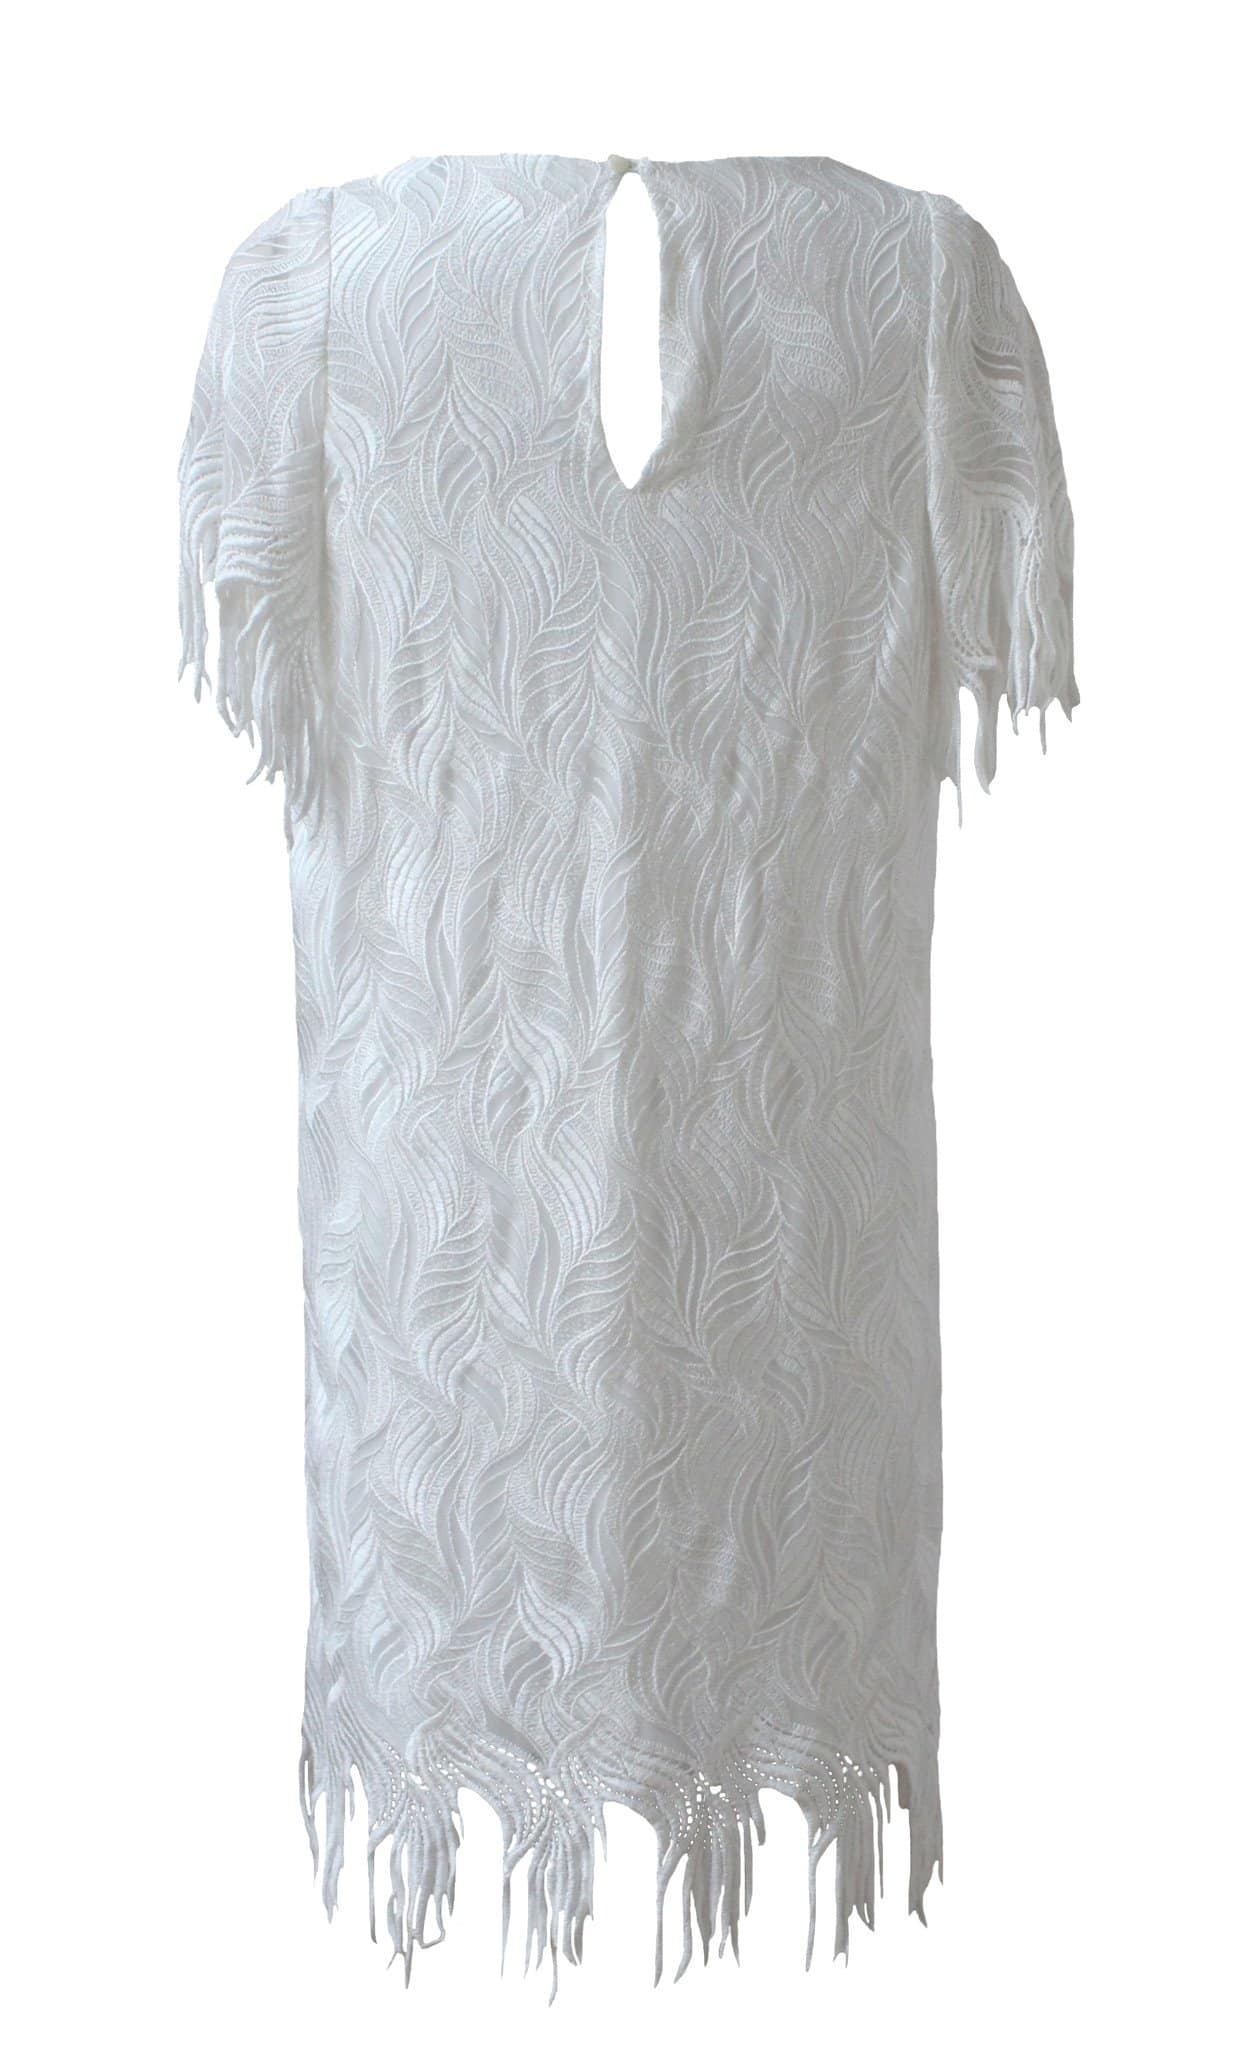 Style: PENELOPE Deco Embroidery Fringe Dress Peony Rice